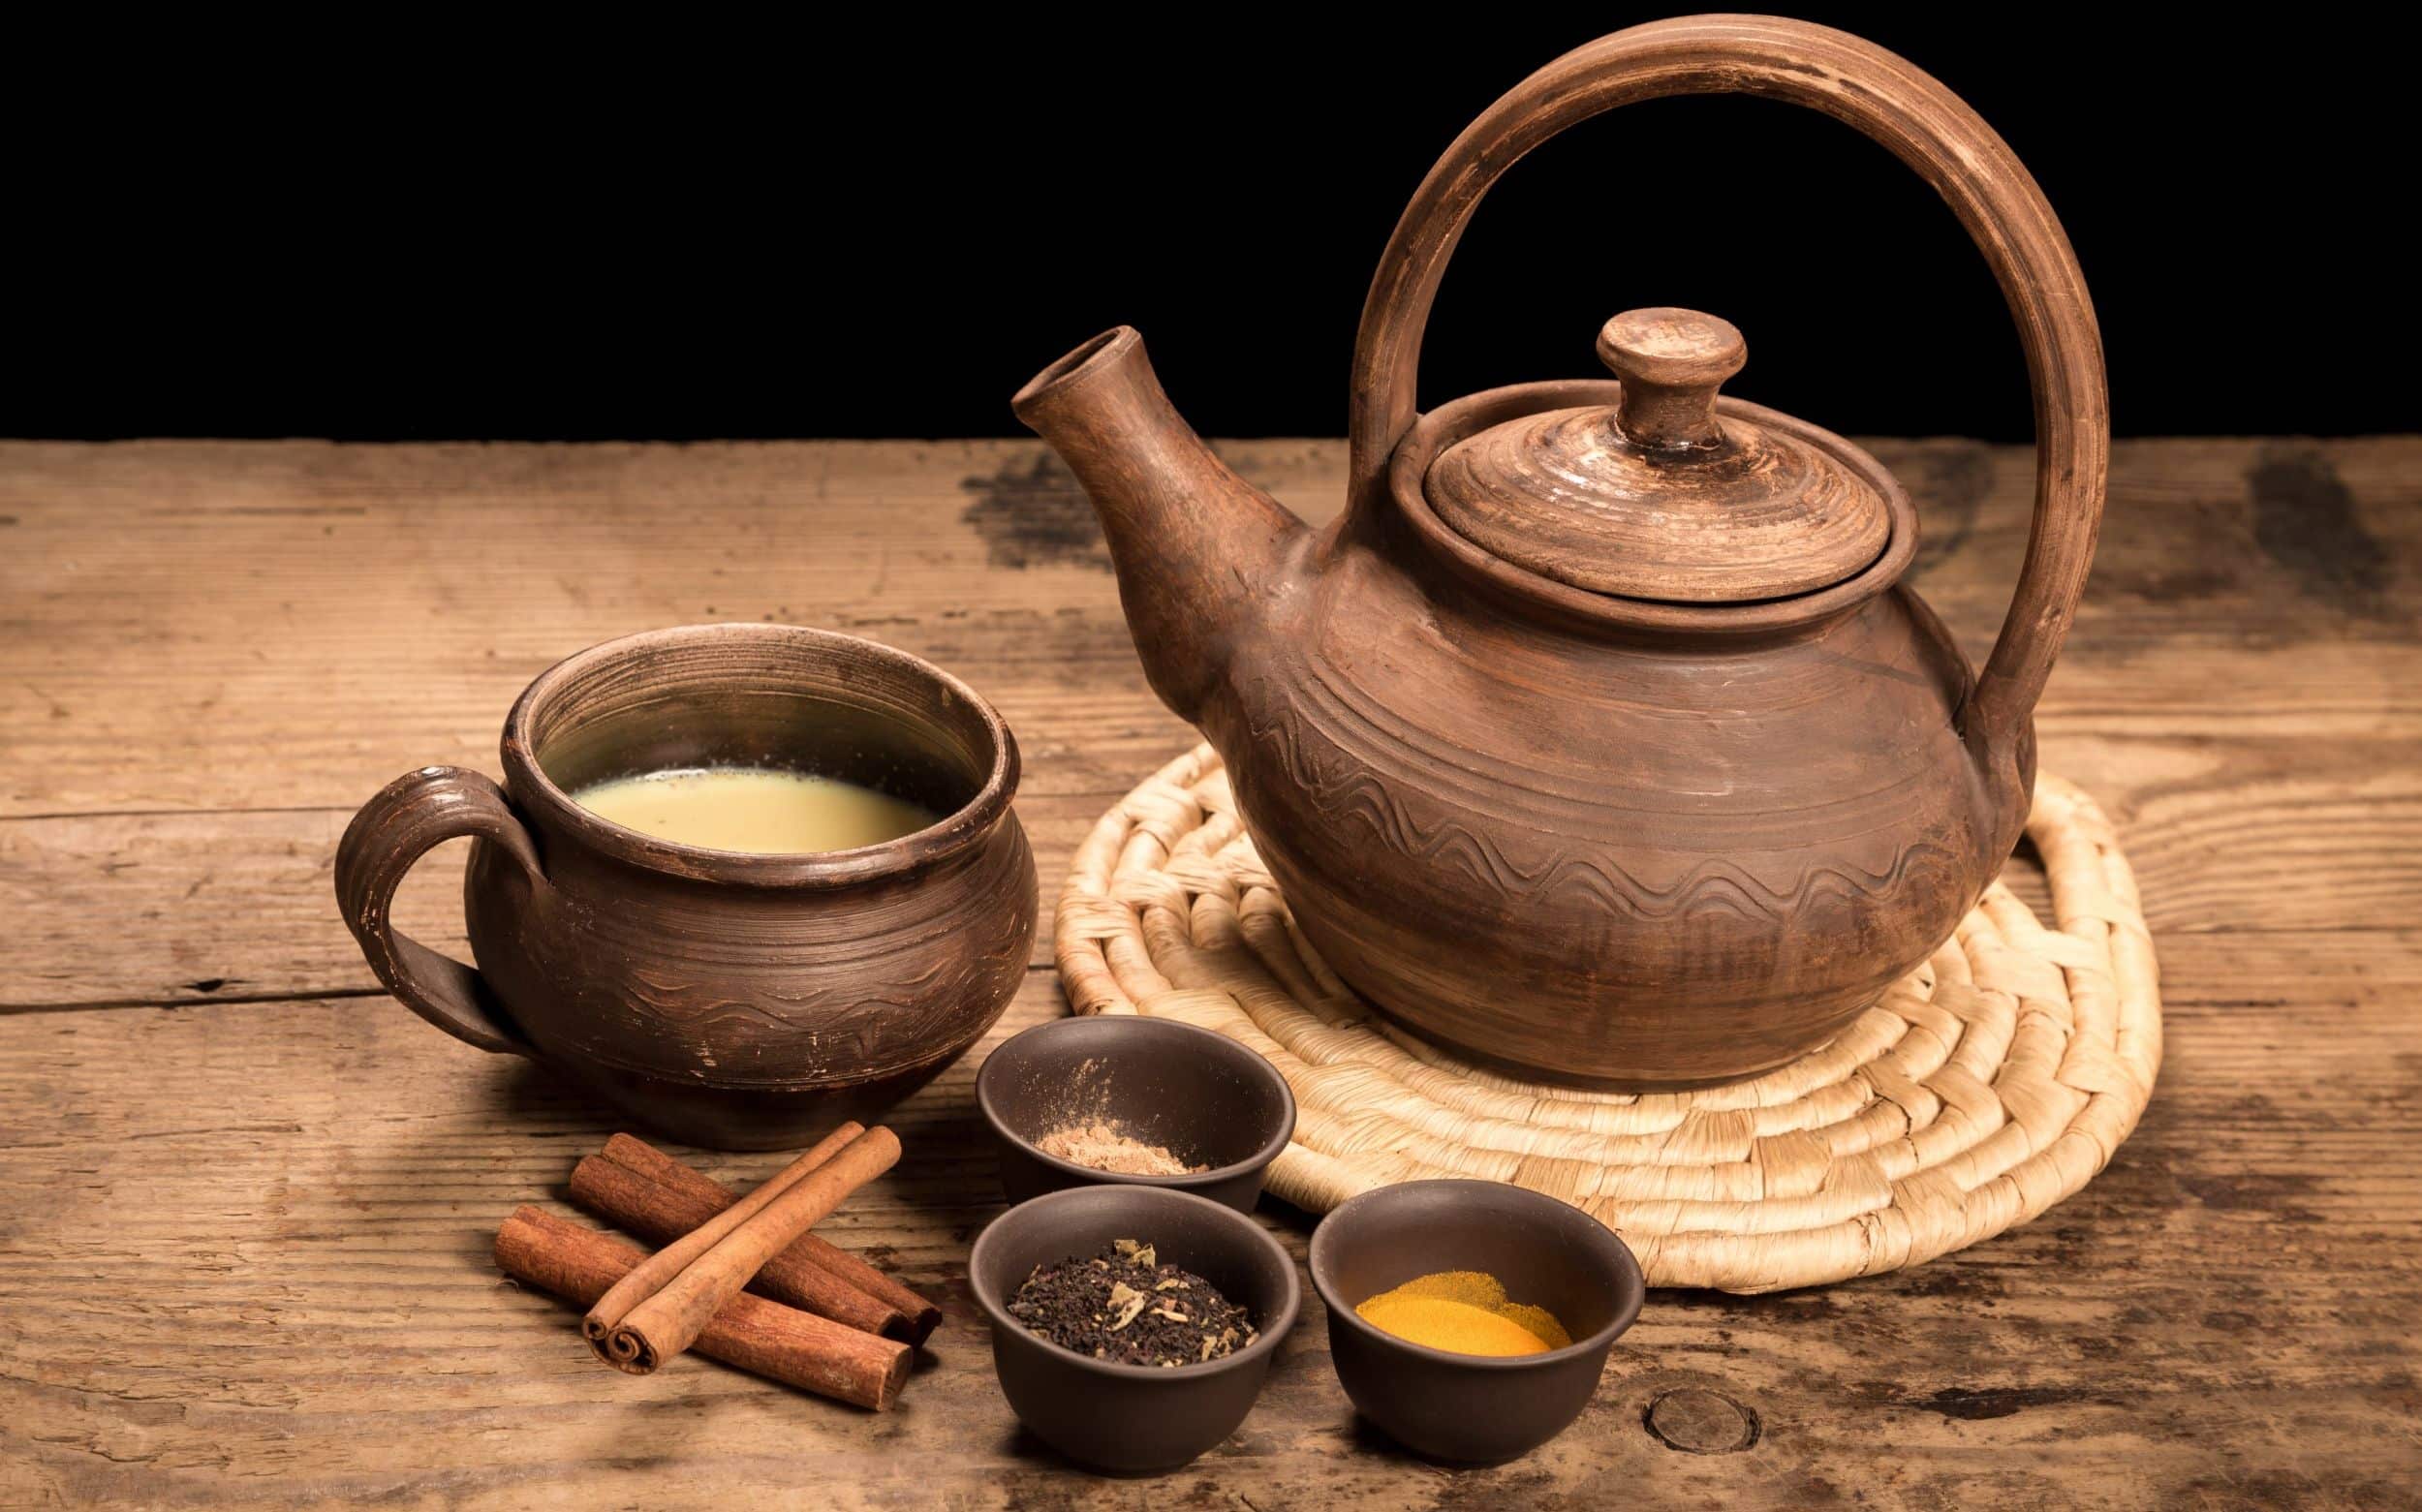 צ'אי מסאלה - חליטת תה בניחוח הודי המכילה תערובת תבלינים ארומטית